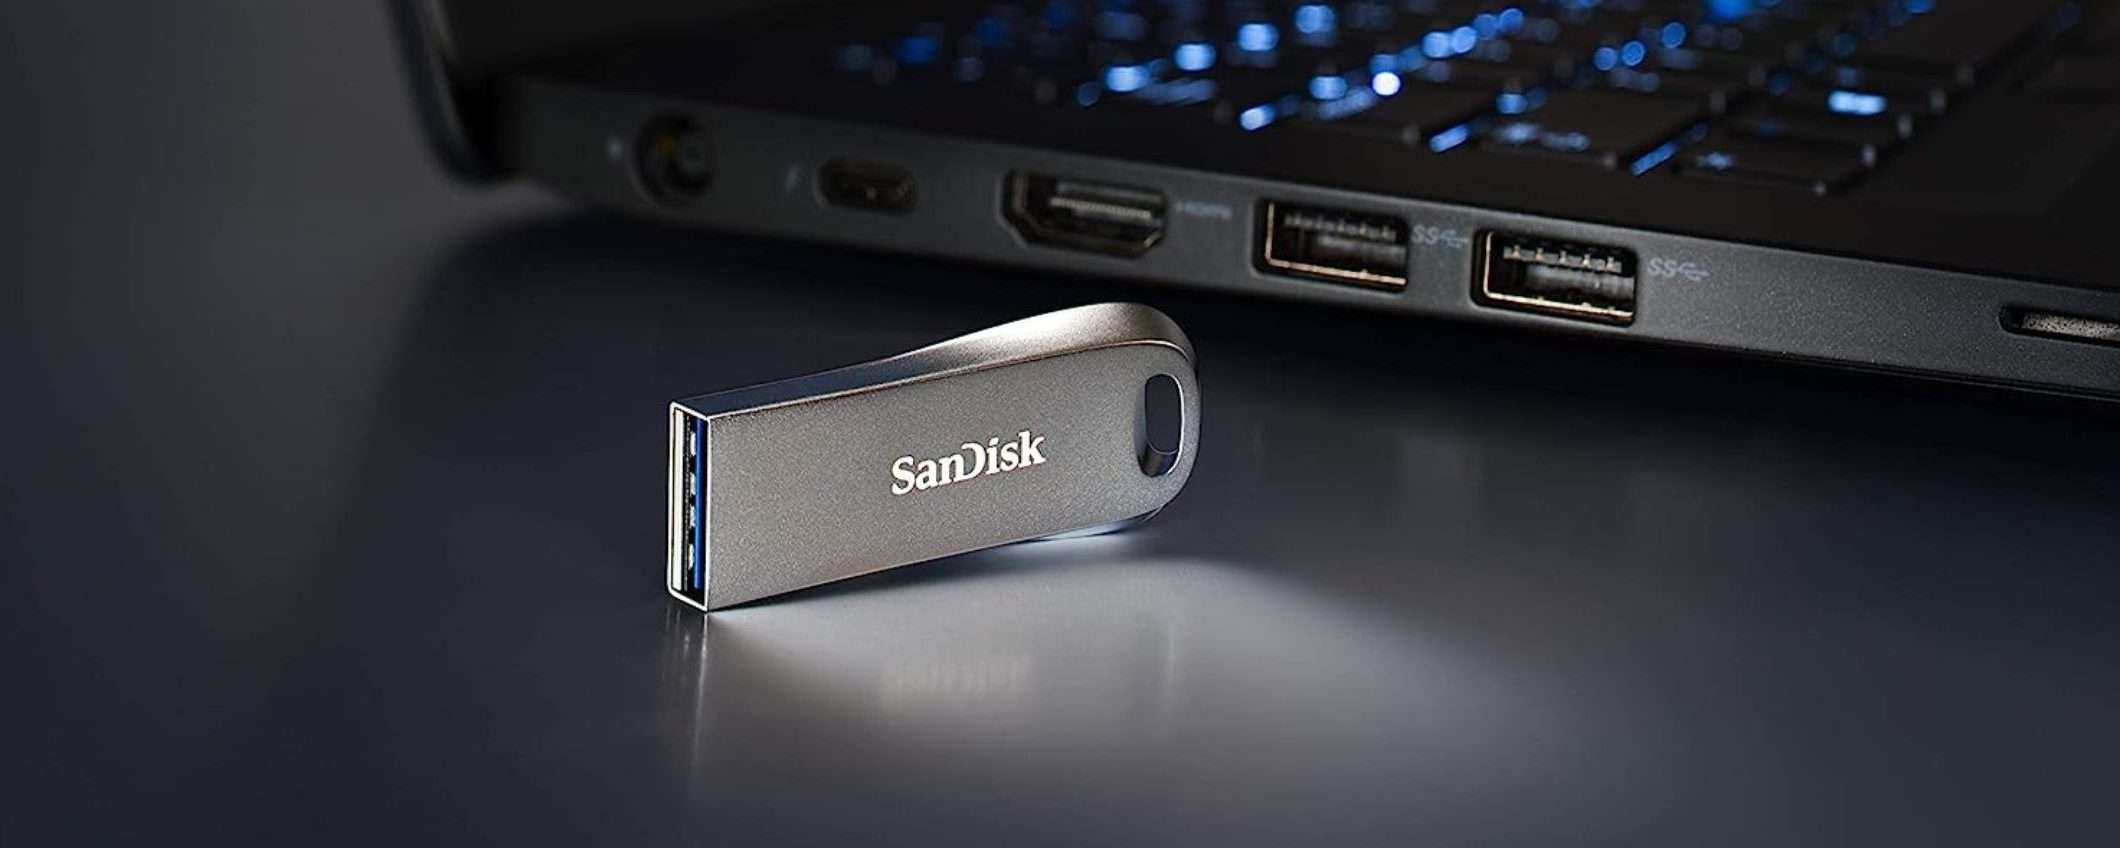 Pen Drive SanDisk 128GB a meno di 20 euro su Amazon